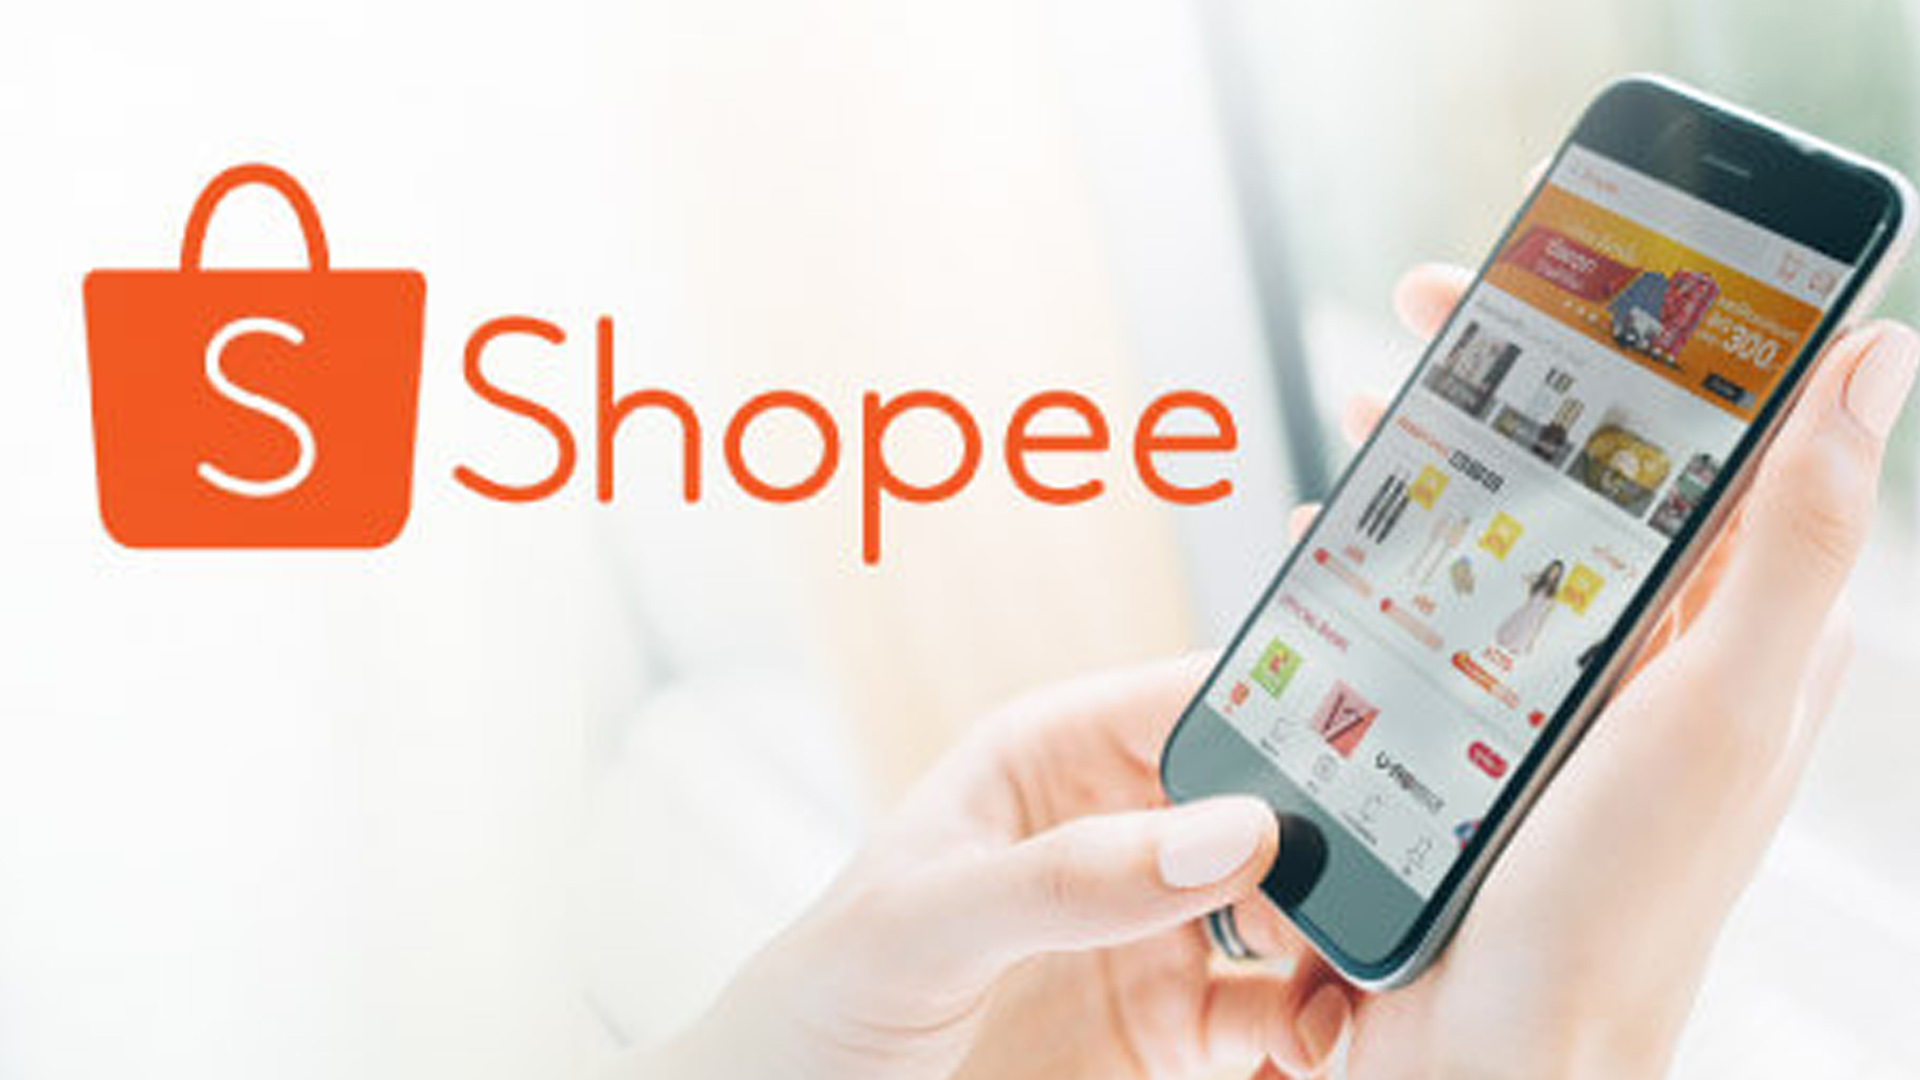 8 Cách bán hàng trên Shopee hiệu quả mà các chủ shop cần nắm - Shopee Blog